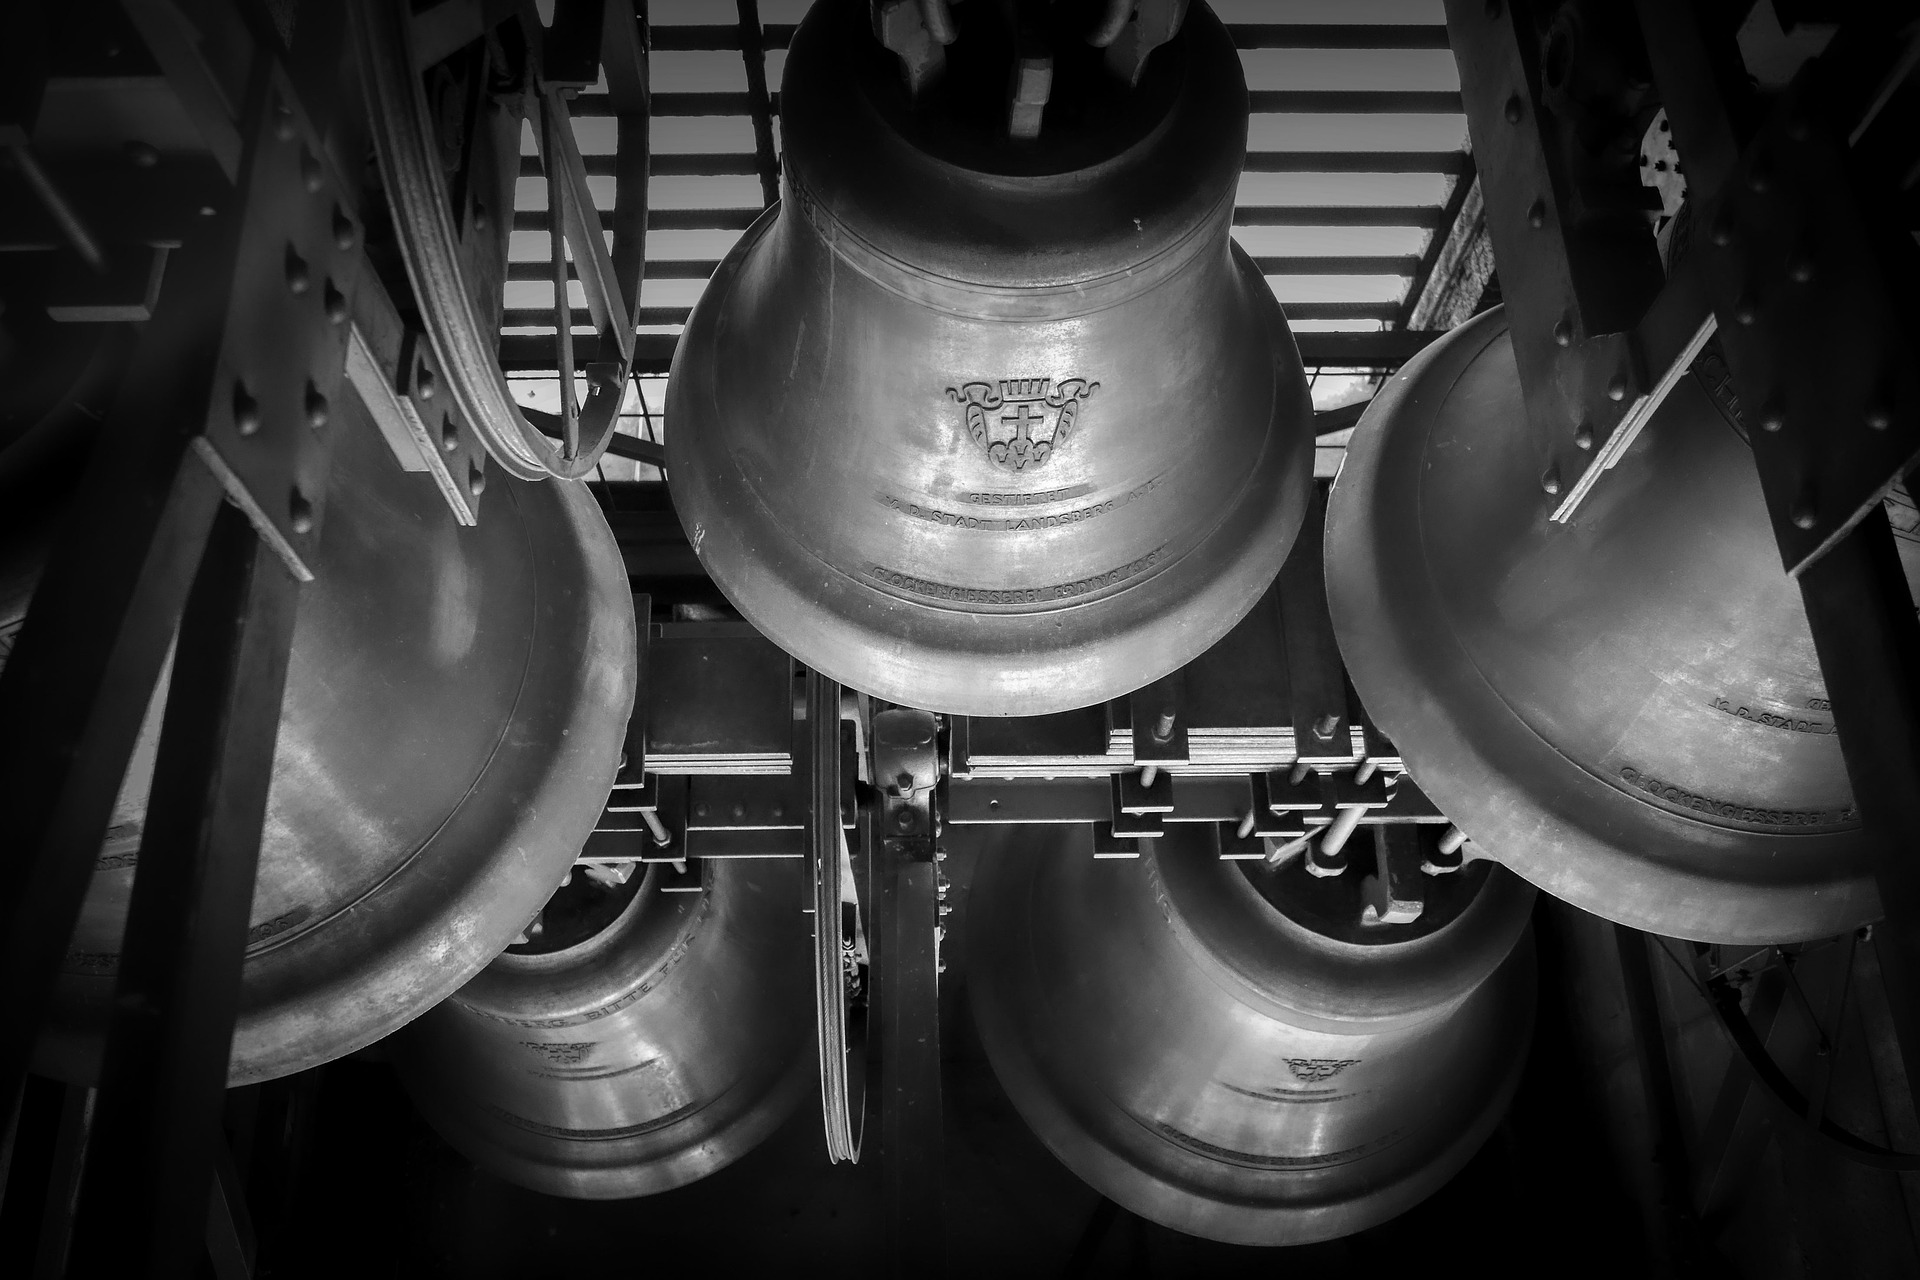 Glocken (c) Bild von Albrecht Fietz auf Pixabay